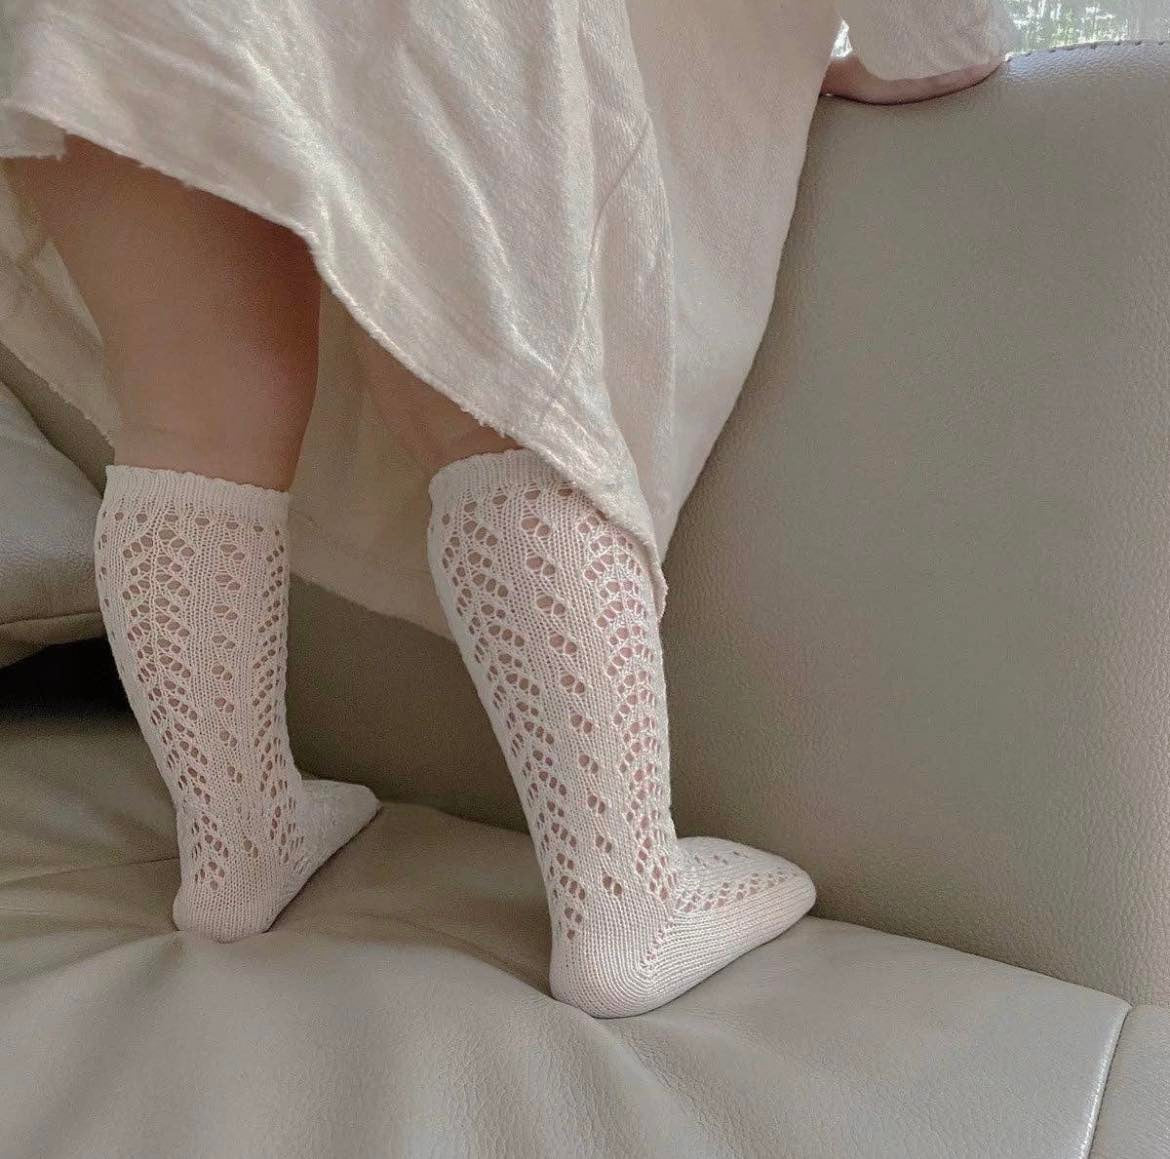 Crochet Knee Sock